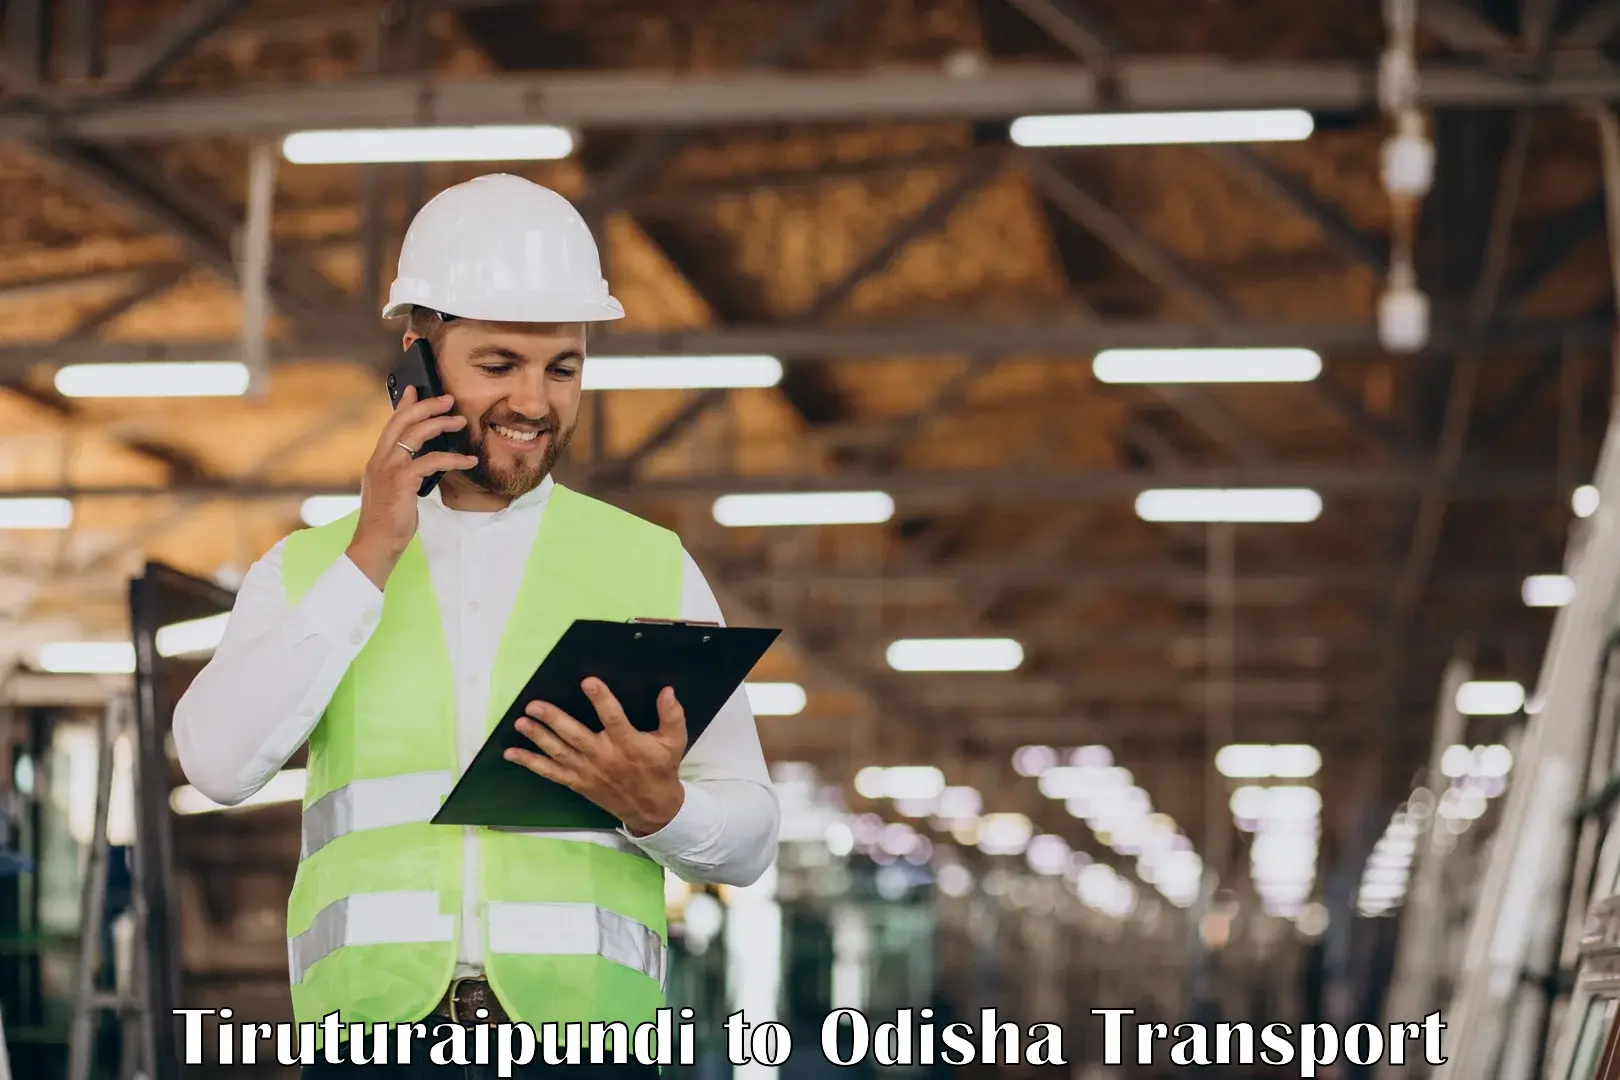 Commercial transport service Tiruturaipundi to Saintala